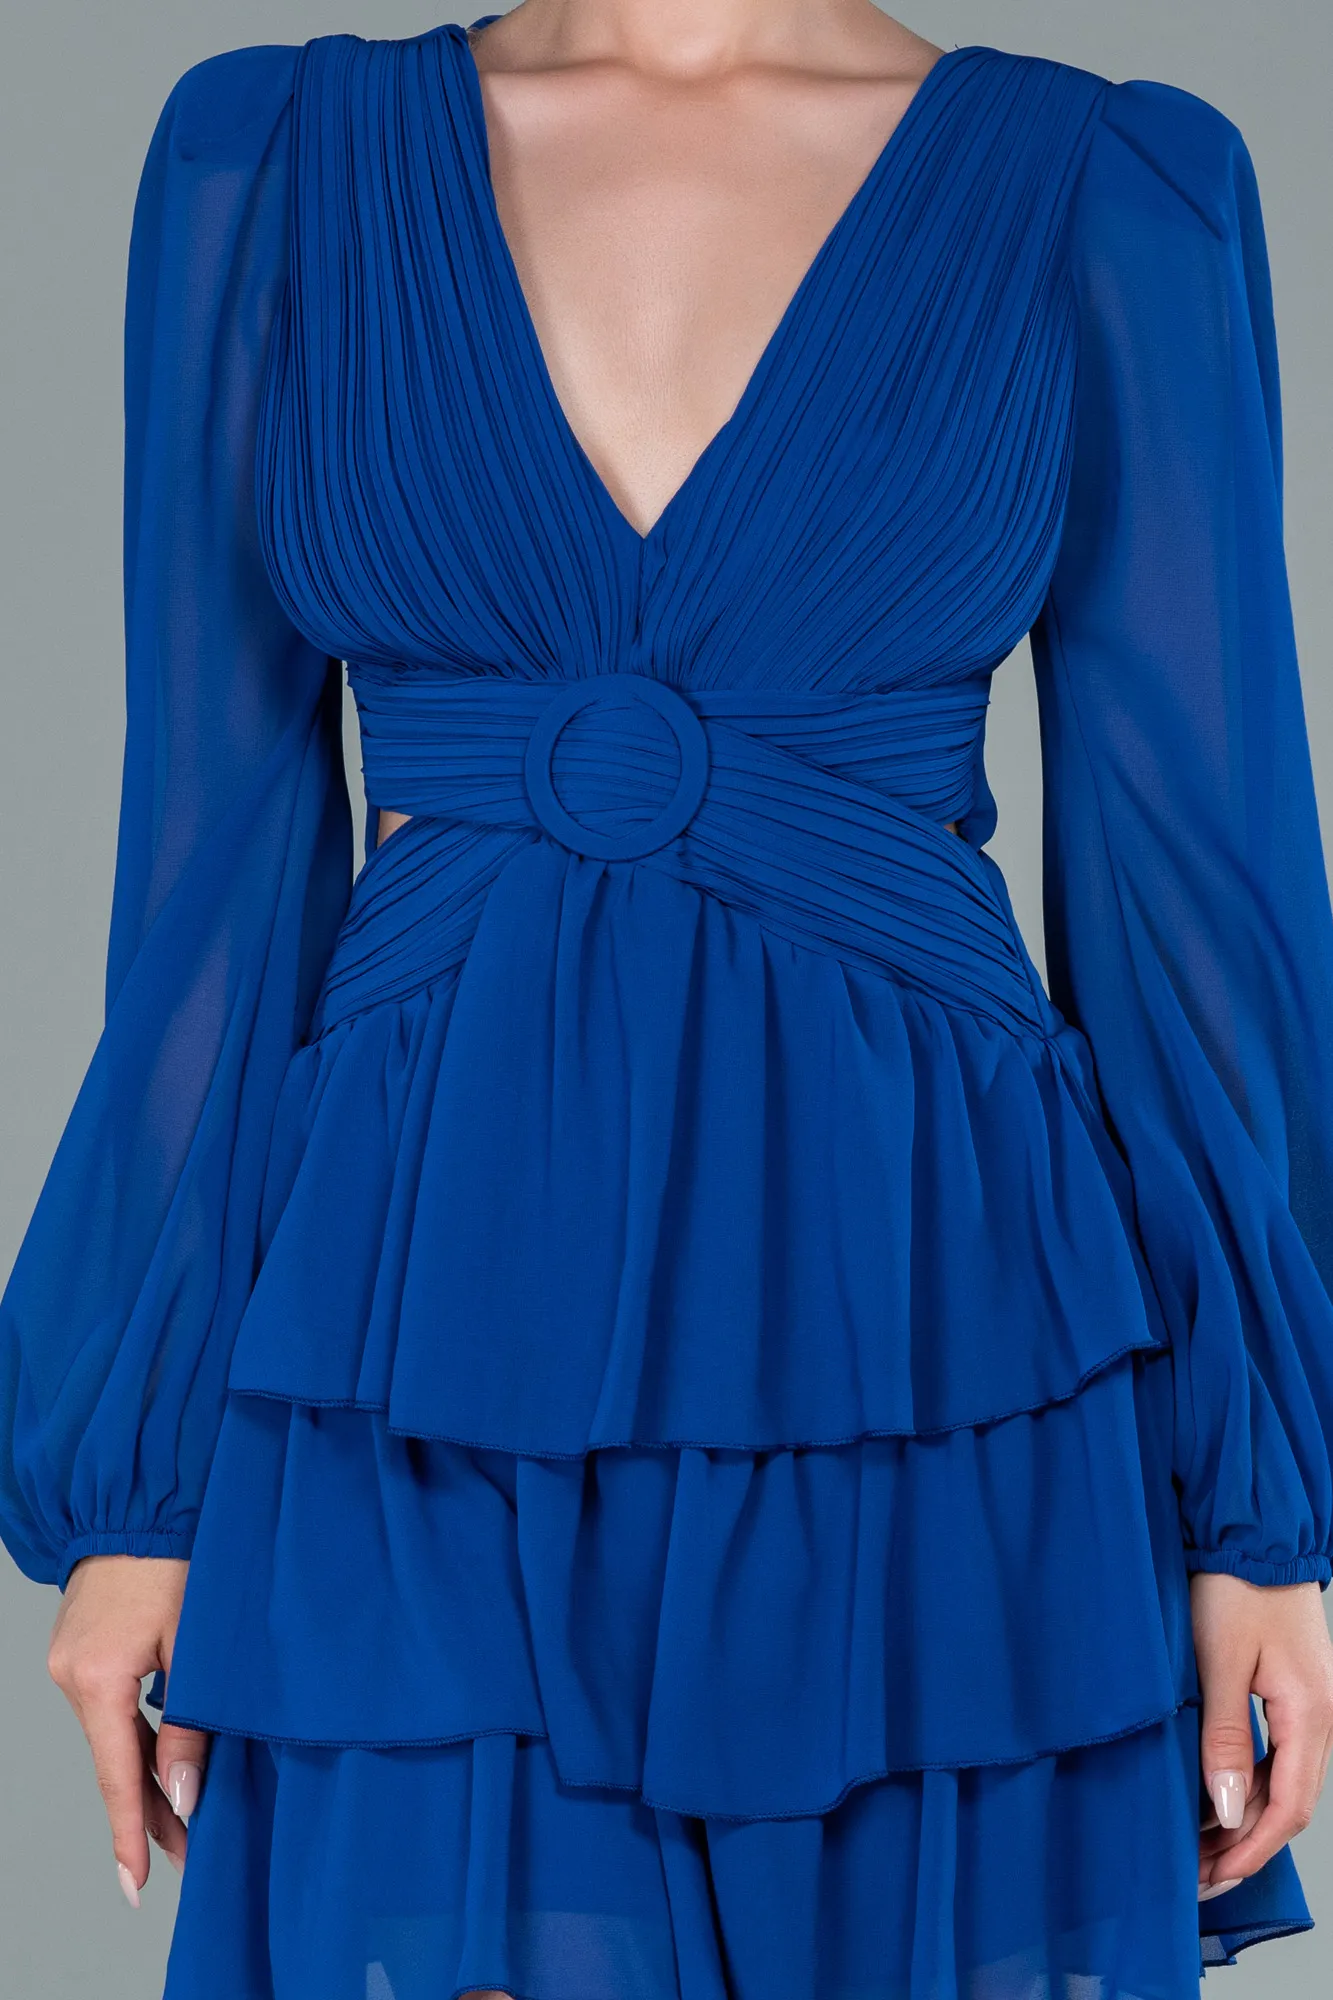 Sax Blue-Mini Chiffon Invitation Dress ABK1899